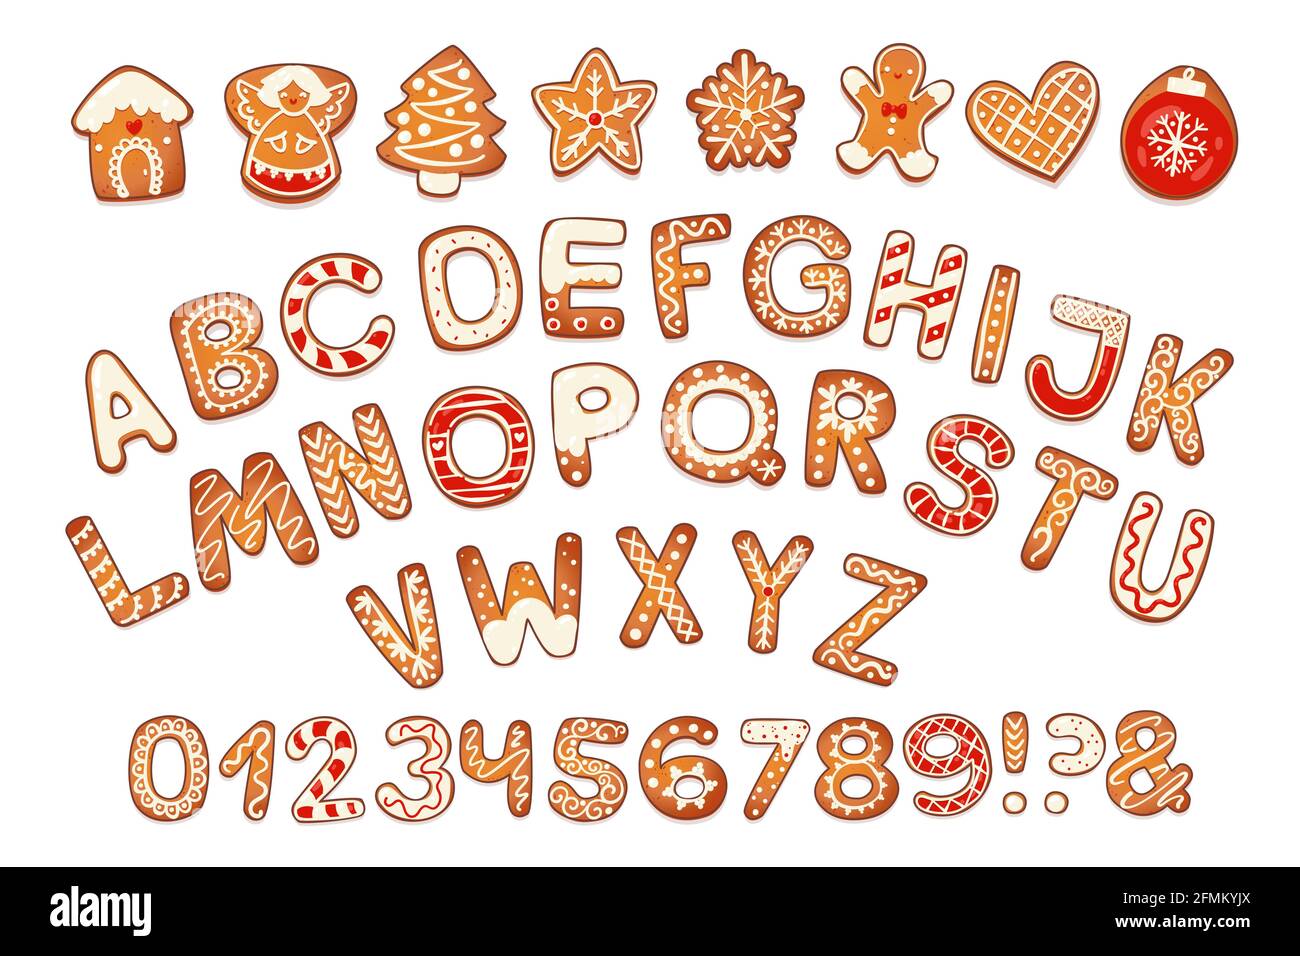 Weihnachten Lebkuchen-Kekse Alphabet mit Zahlen. Keksbuchstaben, Zeichen  für Weihnachtsbotschaften und Design. Vektorgrafik mit Dekorationen  Stock-Vektorgrafik - Alamy